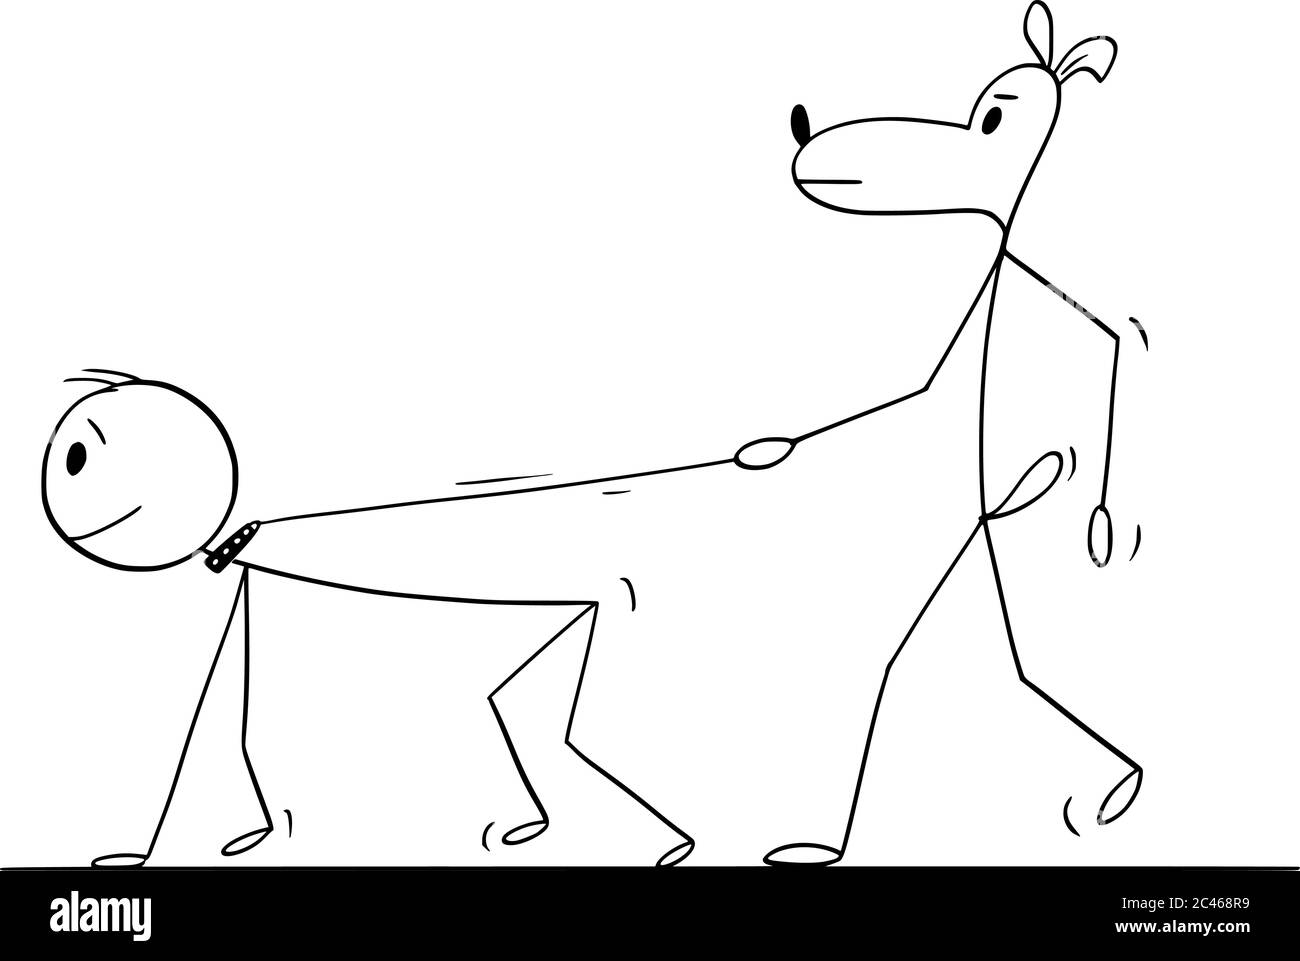 Vektor Cartoon Stick Figur Zeichnung konzeptionelle Illustration des Hundes zu Fuß oder halten Mensch oder Mann an der Leine oder Blei. Stock Vektor